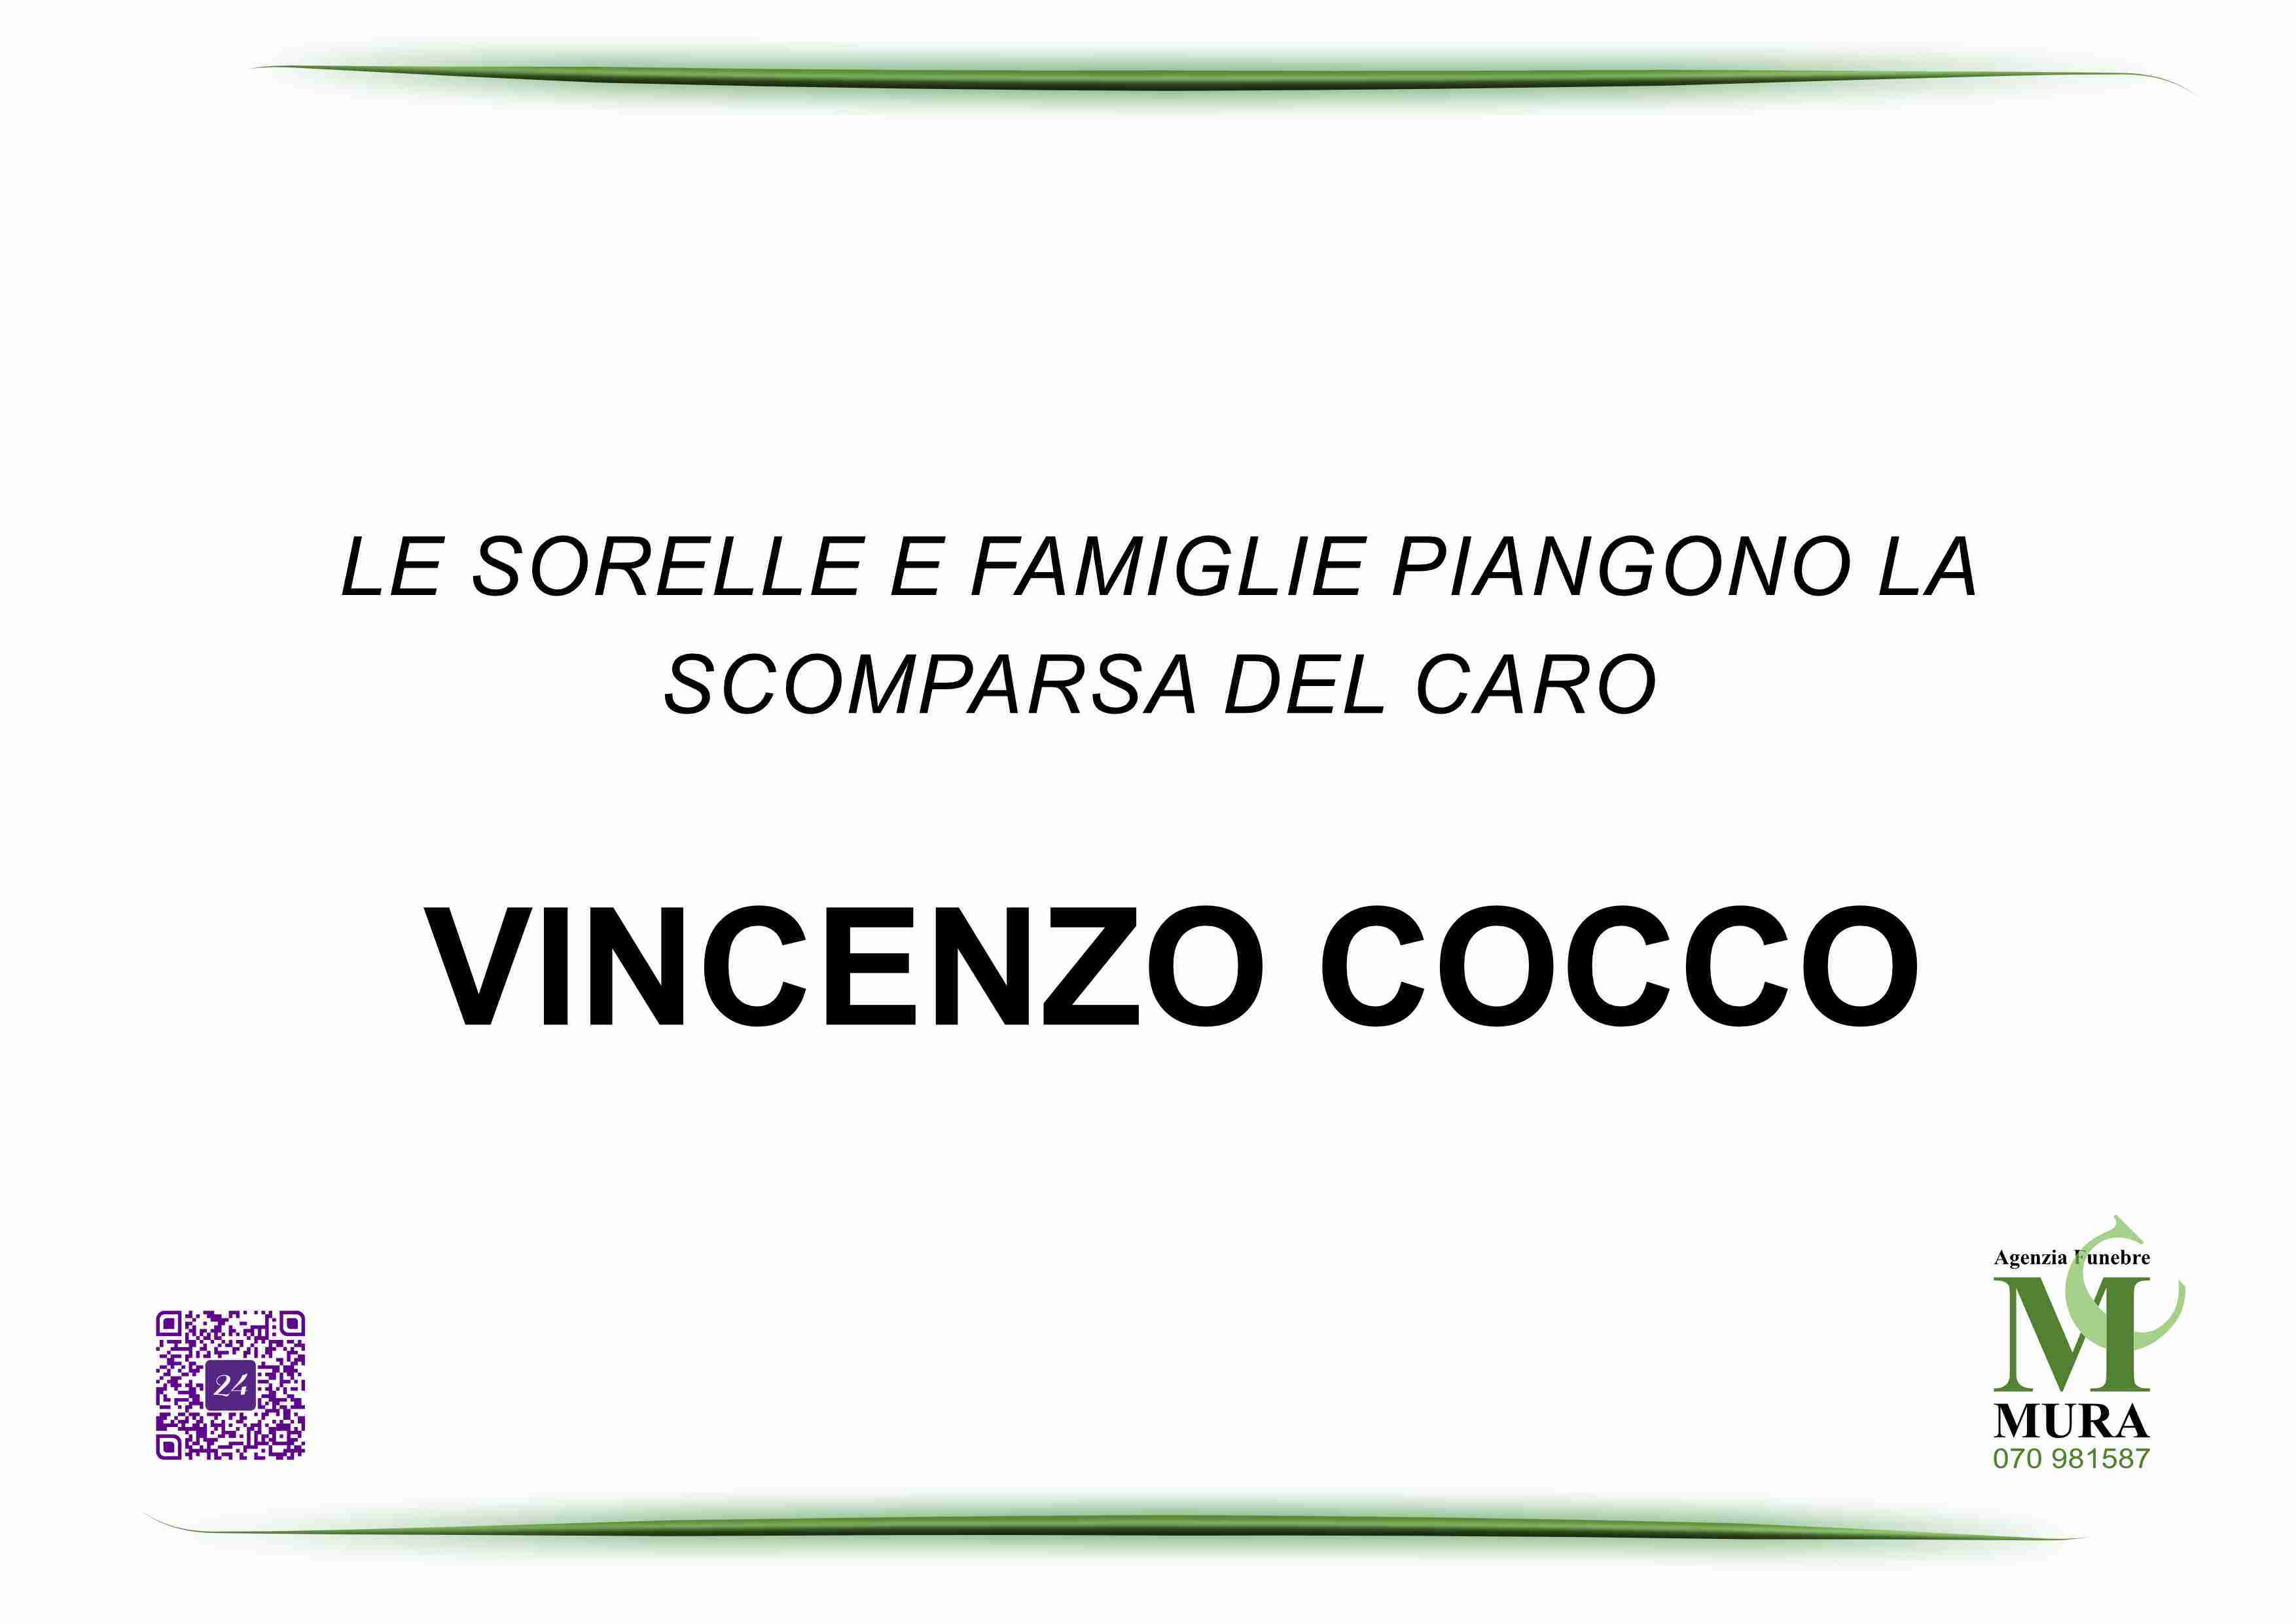 Vincenzo Cocco